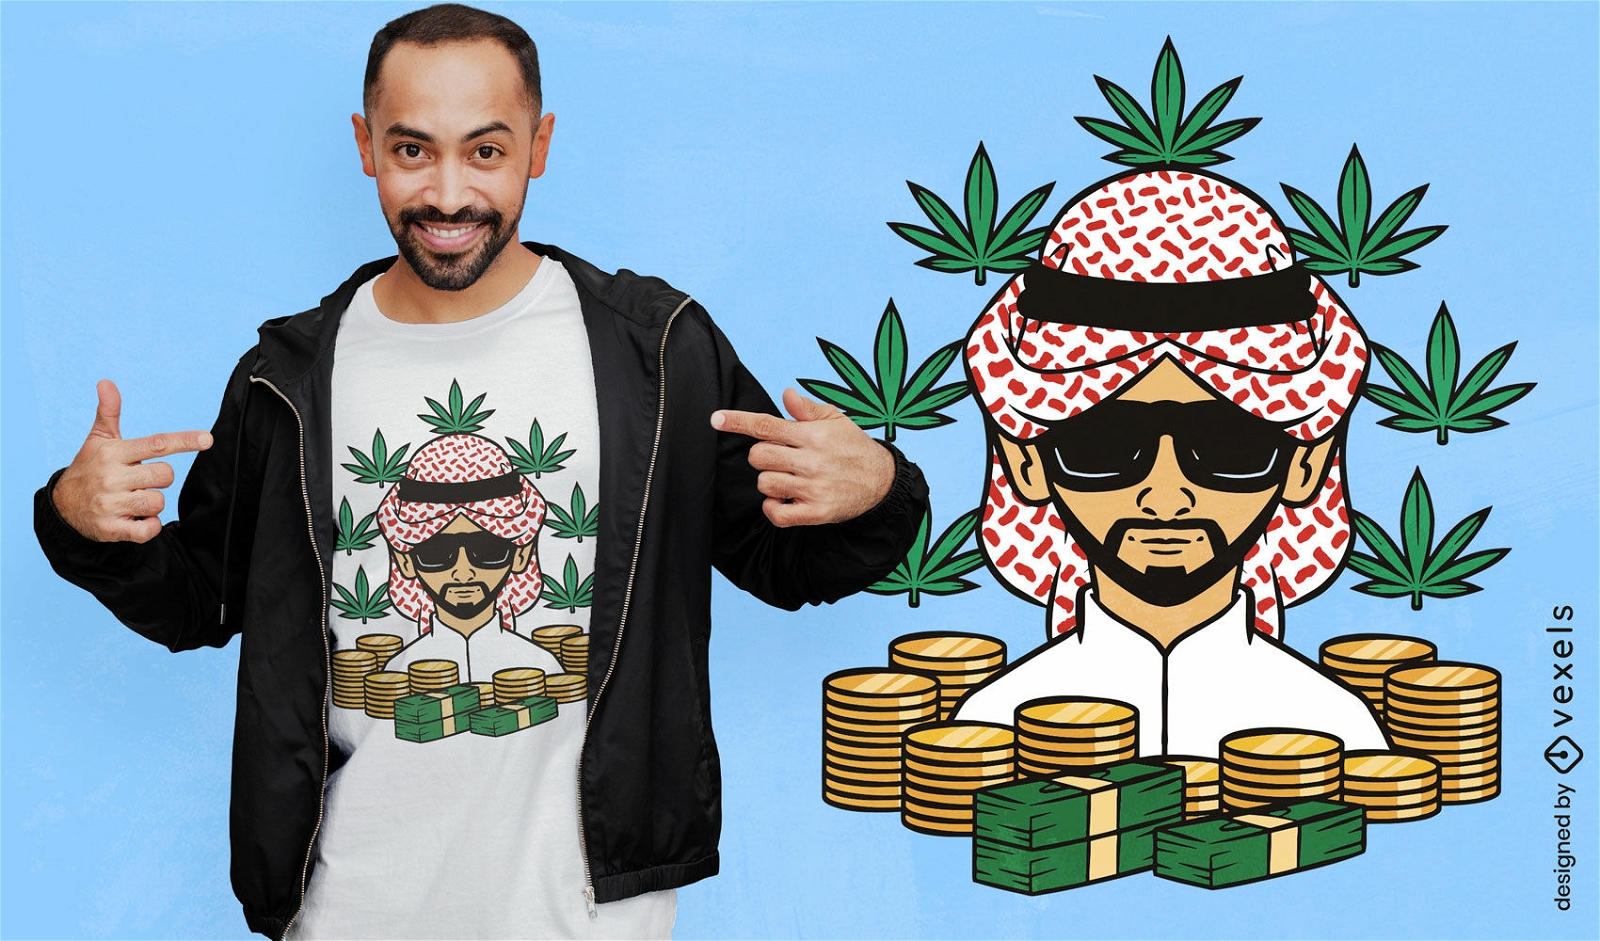 Diseño de camiseta del príncipe de las malas hierbas de Dubái